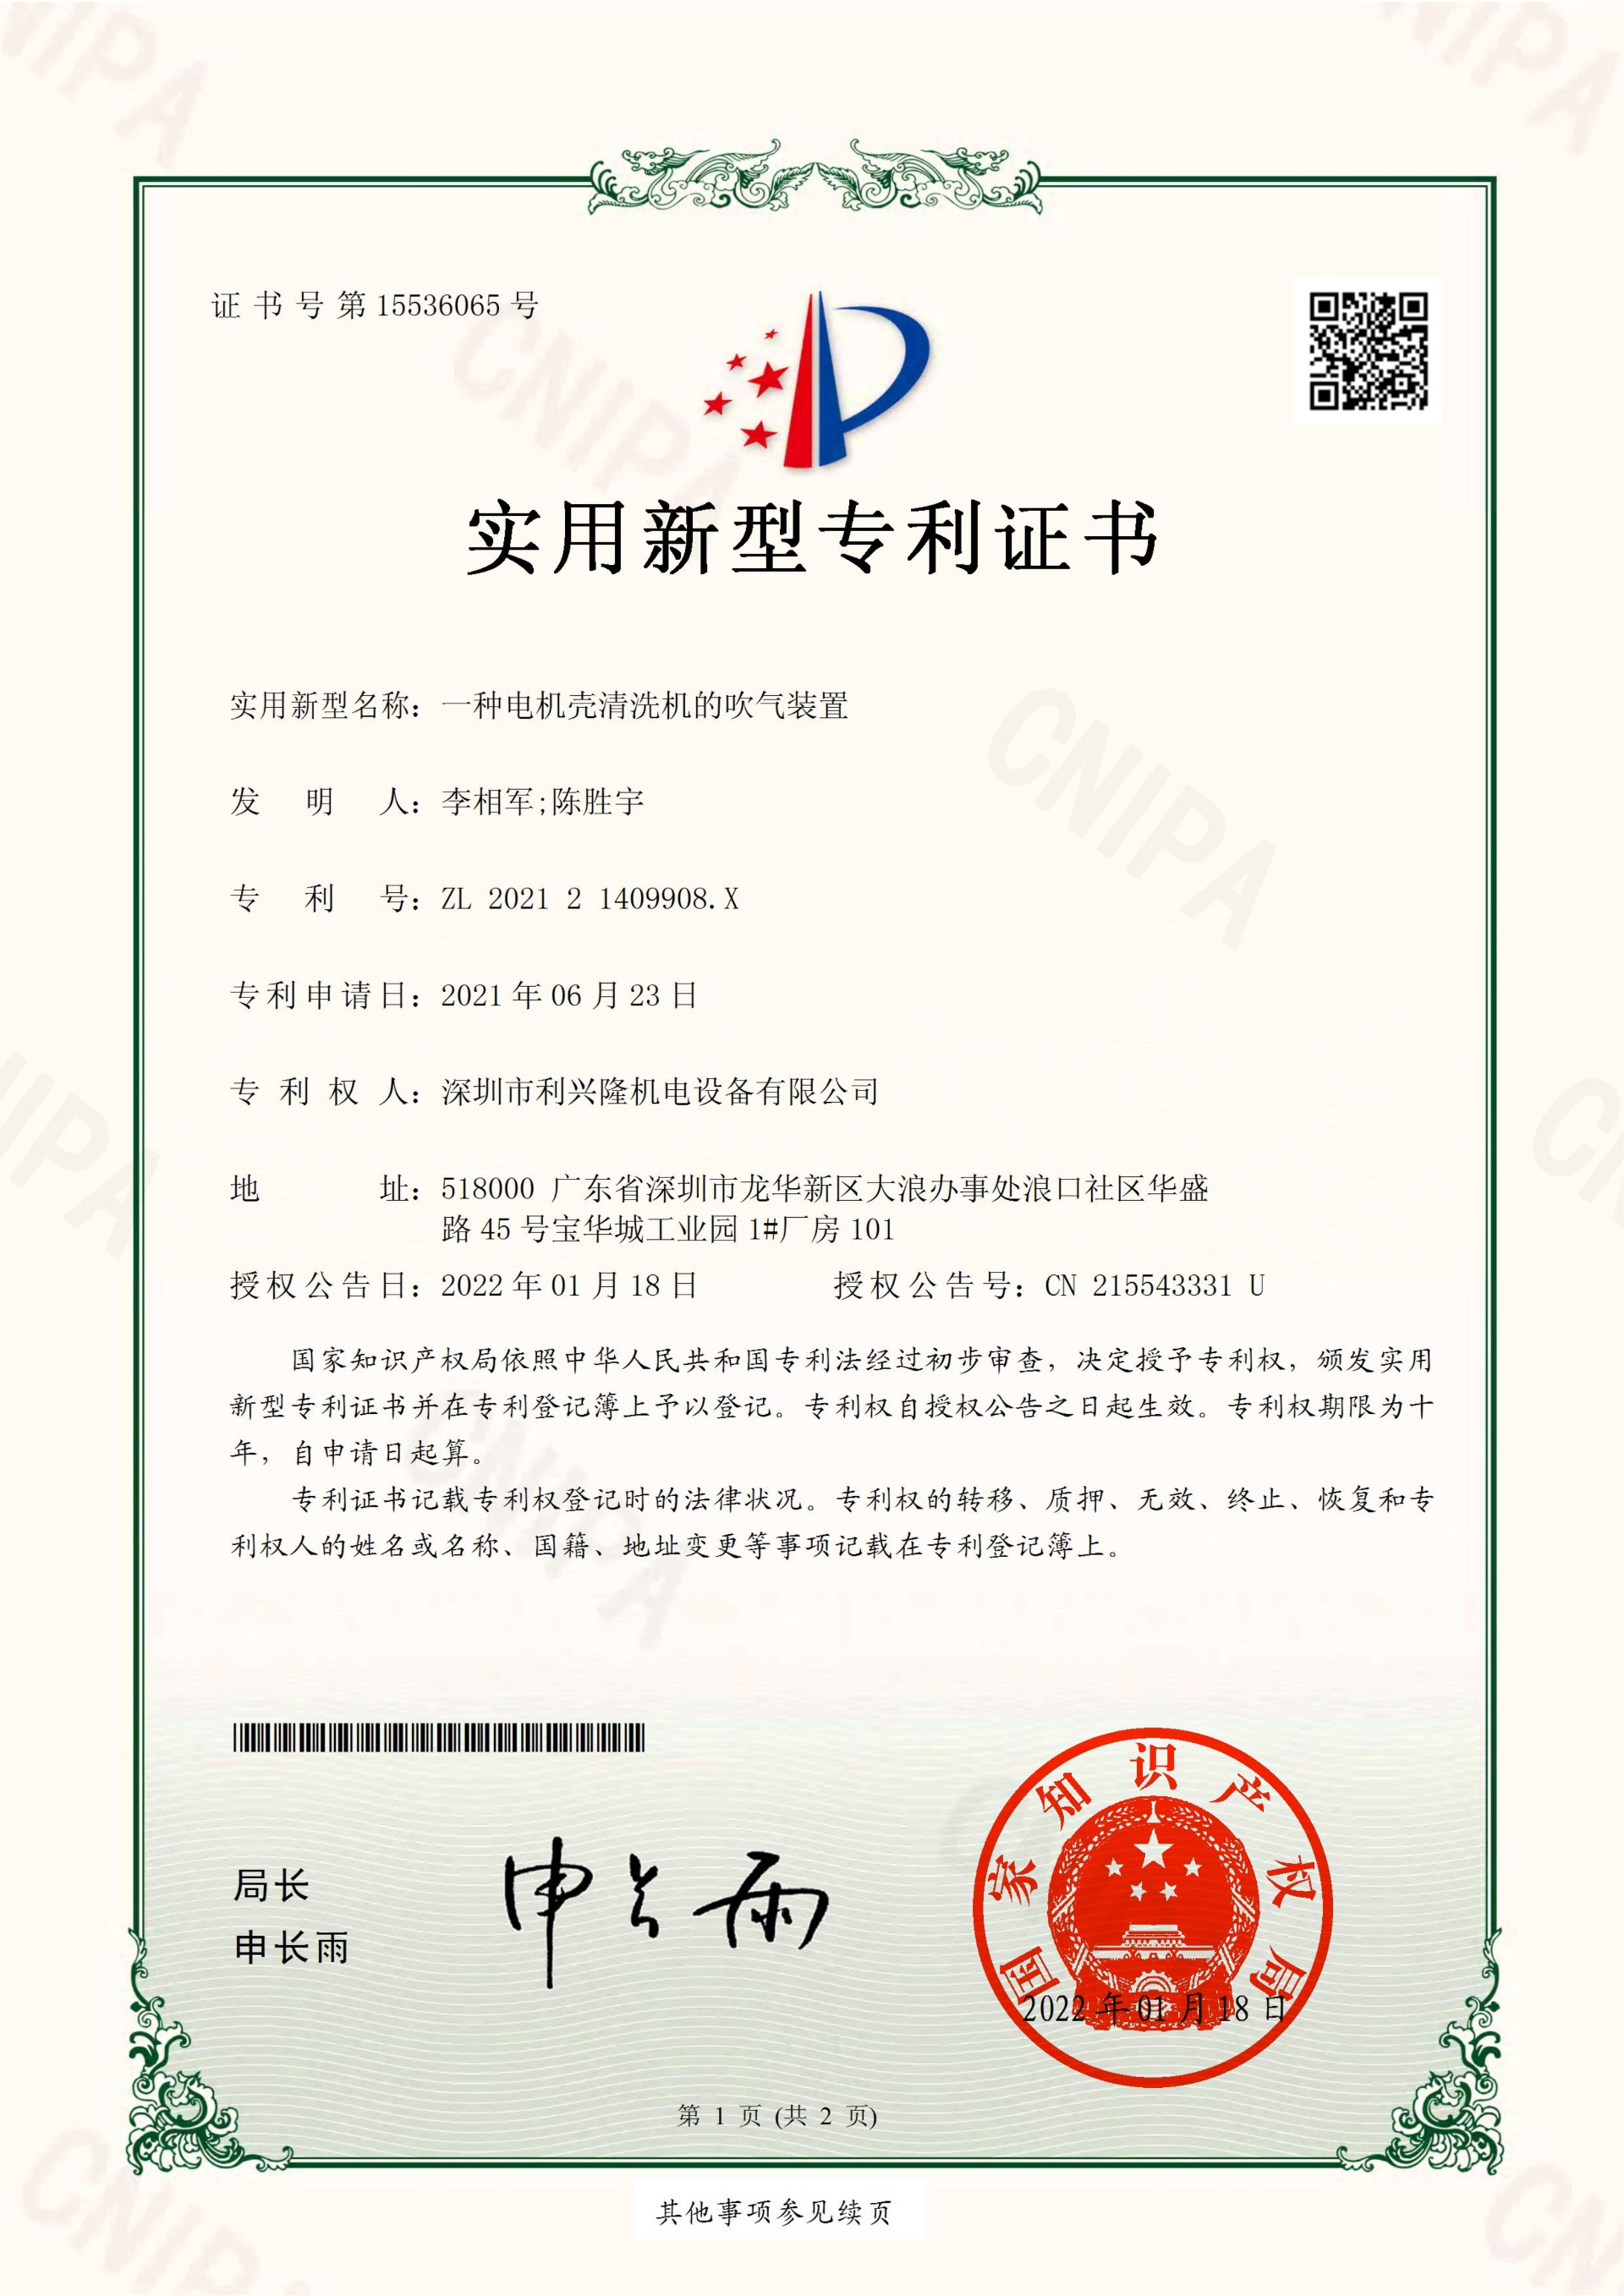 实用新型专利证书  一种电机壳清洗机的吹气装置-深圳市利兴隆机电设备有限公司_00